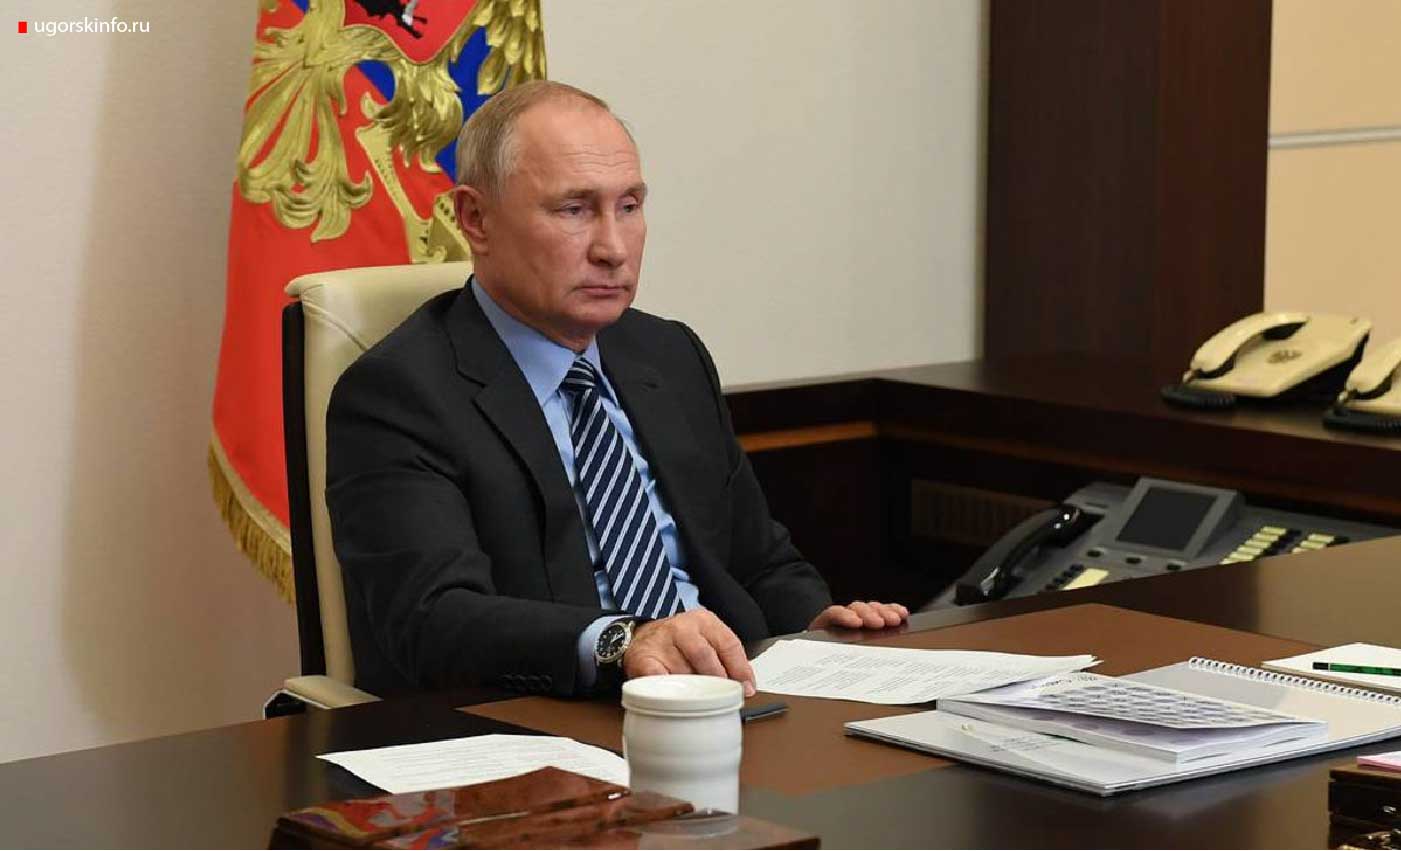 Президент Владимир Путин подписал указ о порядке подачи жителями новых регионов заявлений на паспорт России, соответствующий документ опубликован на портале нормативно-правовых актов.